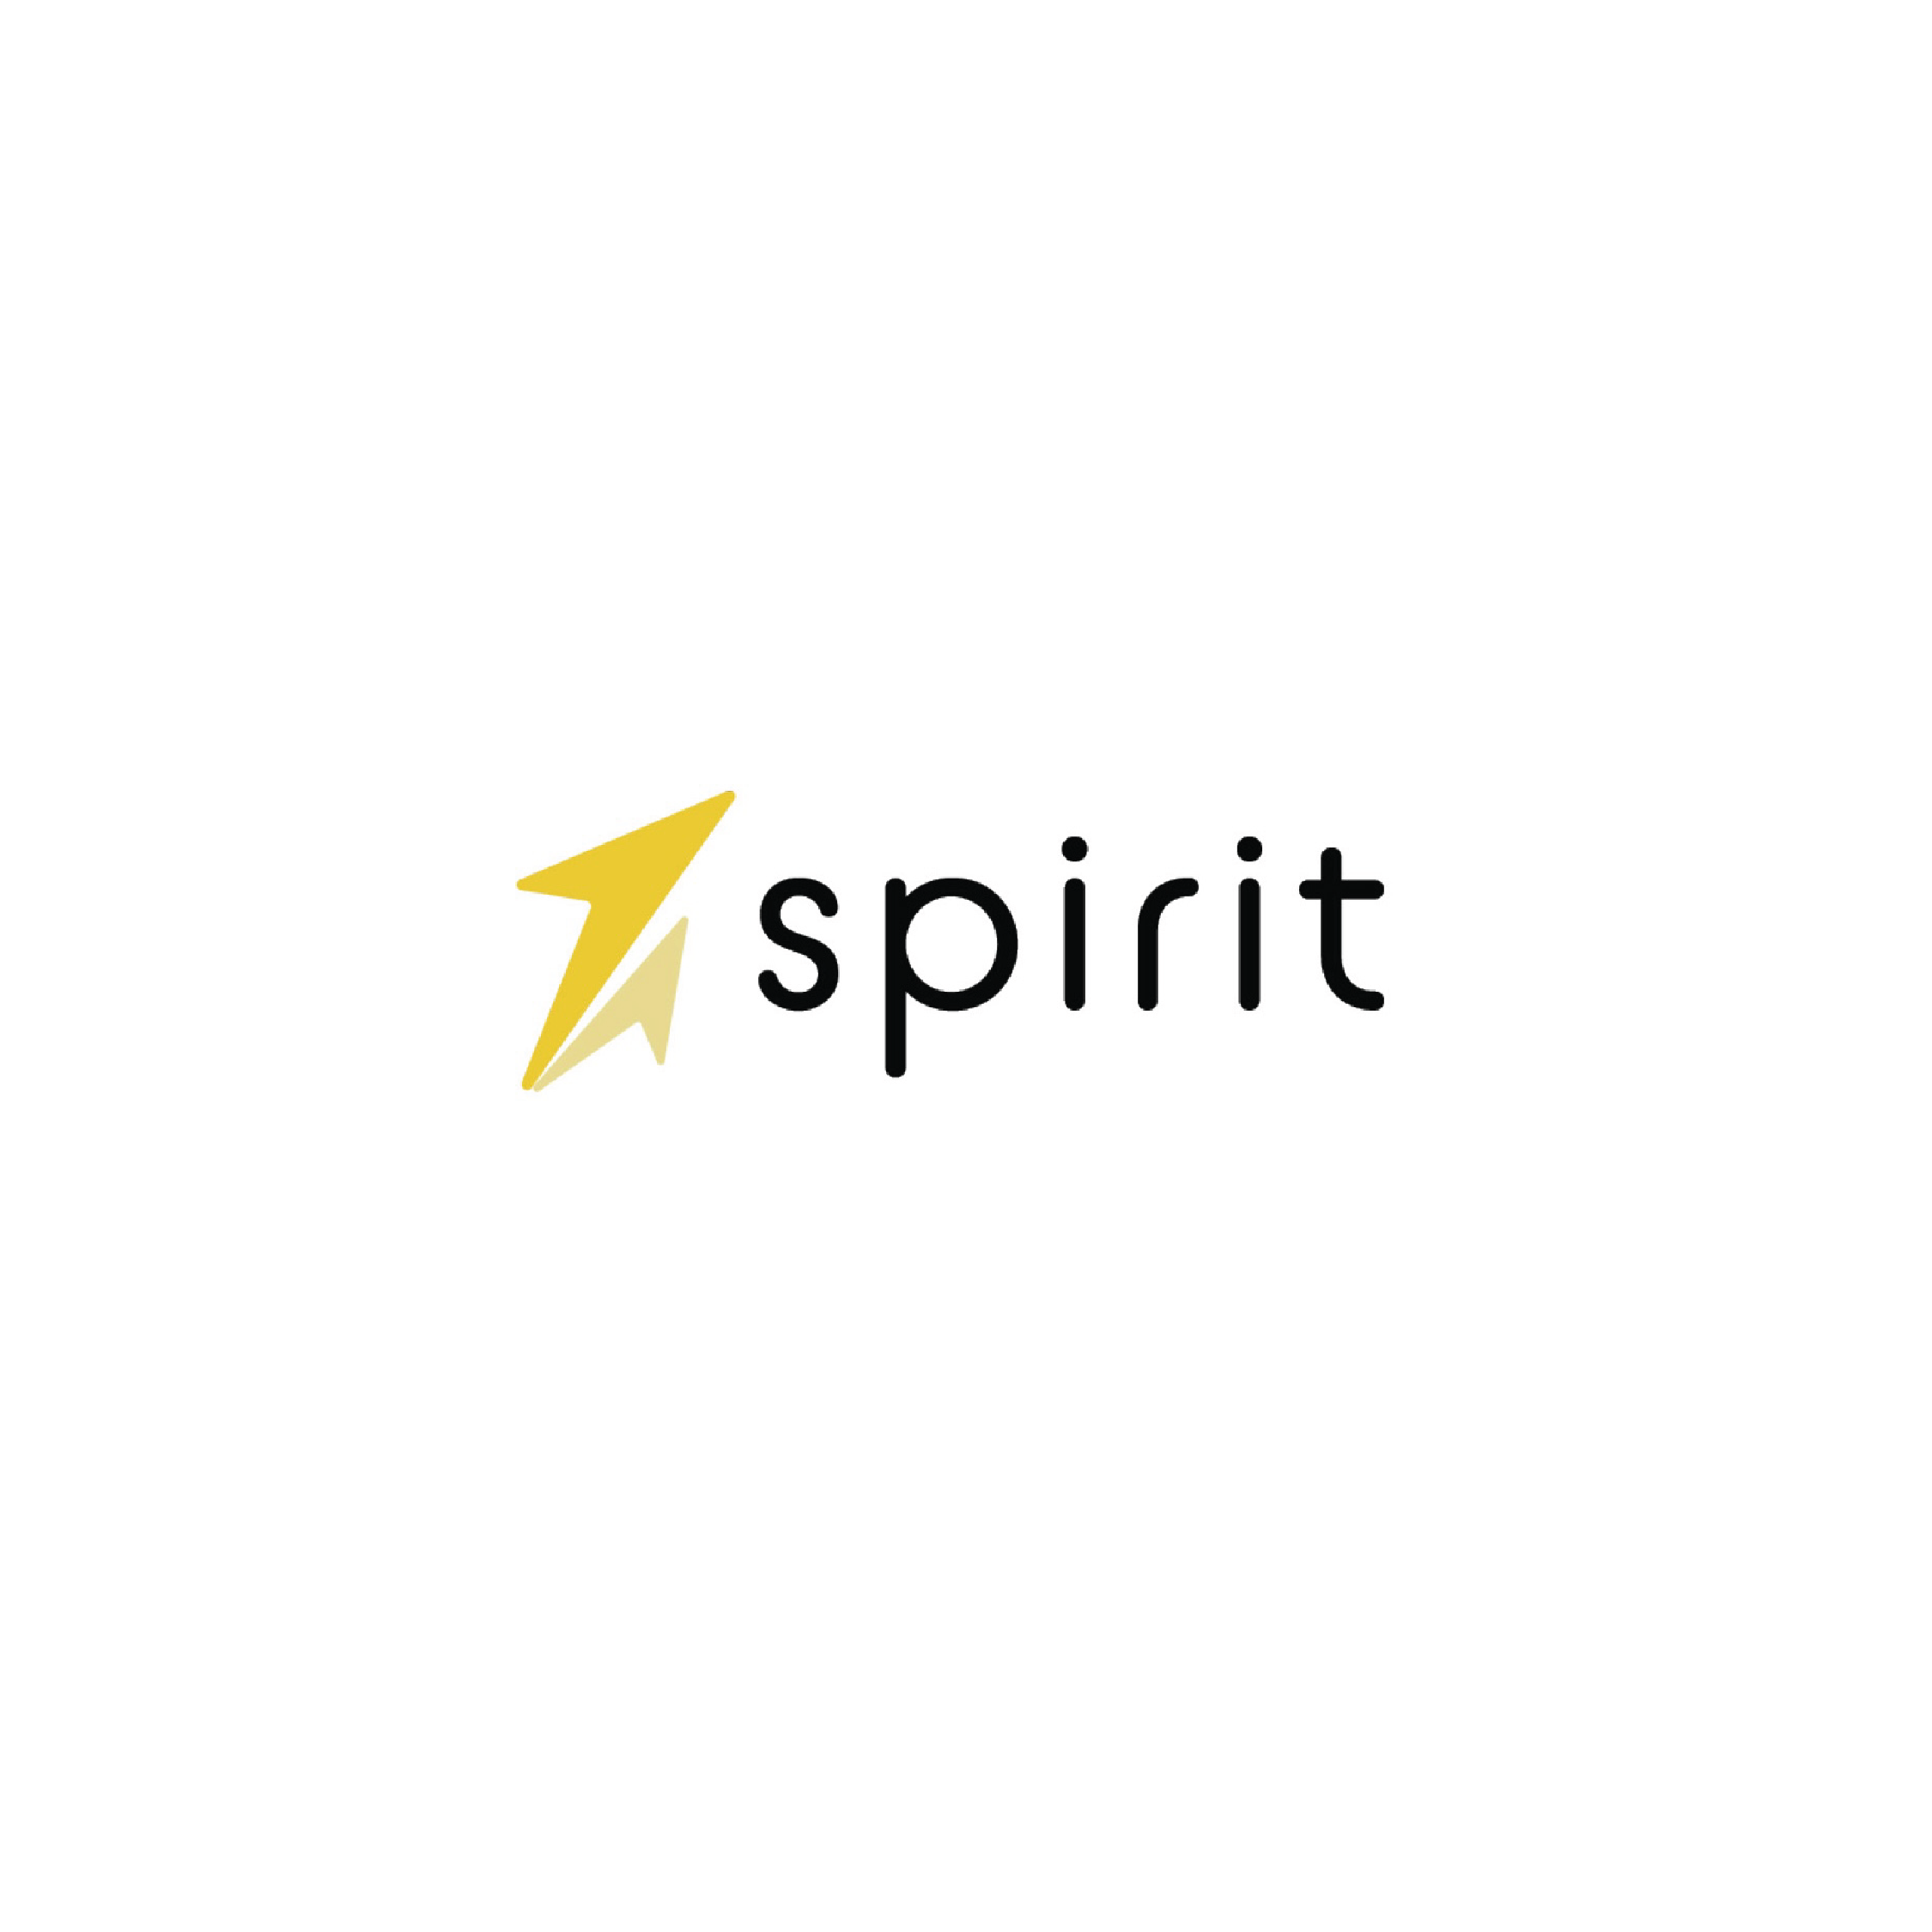 Spirit Airlines Redesign